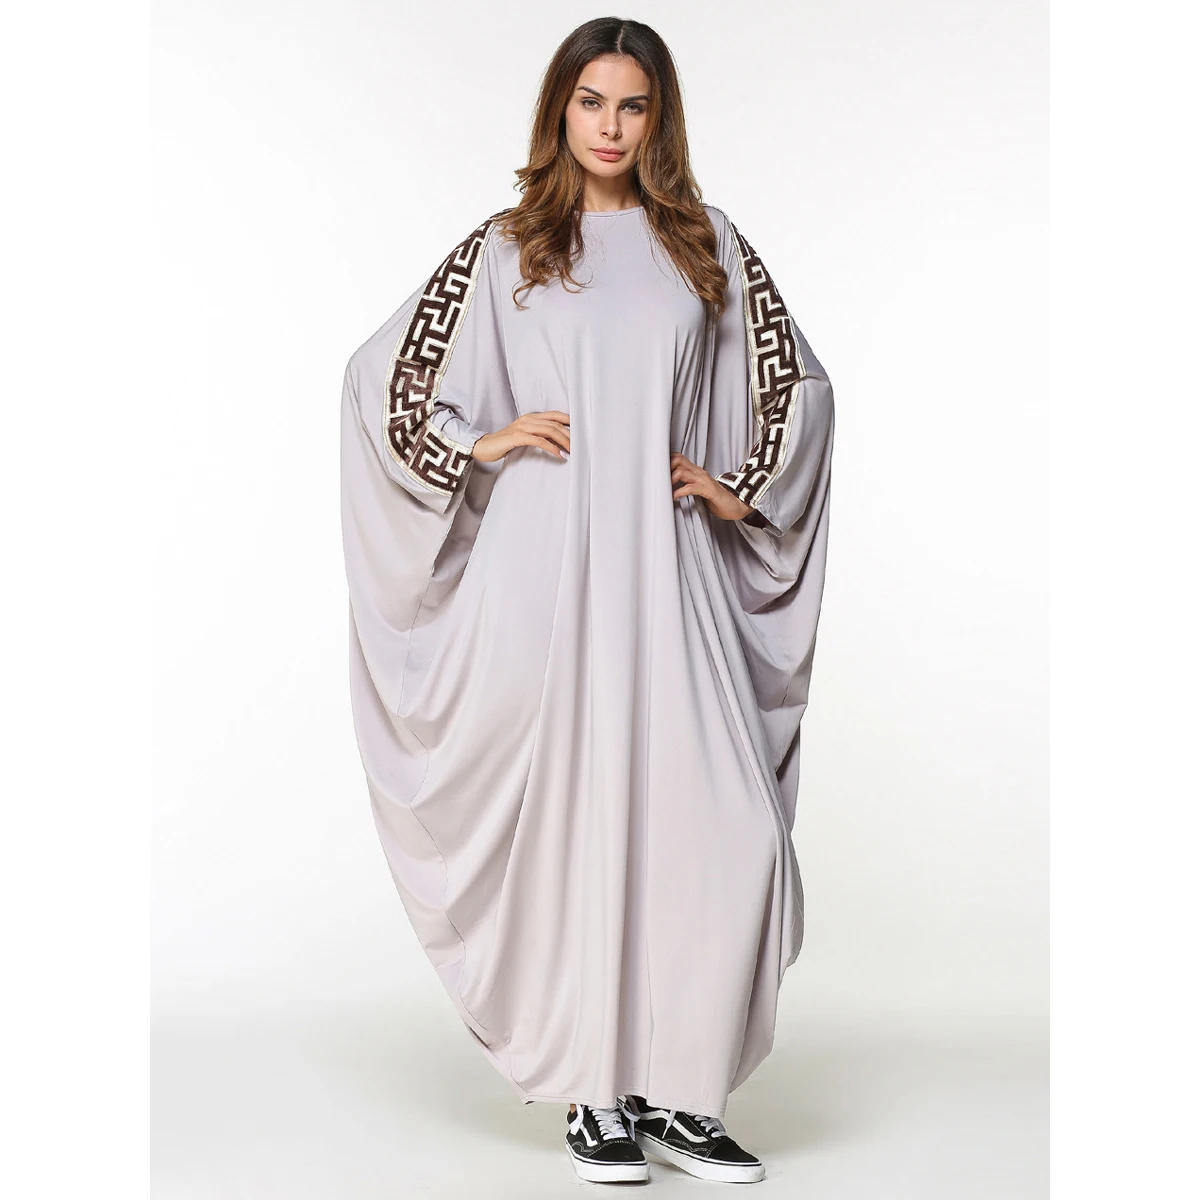 ファッションイスラムイスラム教徒のドレスドバイカフタンドレスの新しいモデルアバヤ Buy ドバイカフタンドレス ホット販売祈り教徒ドレス ヒジャーブトルコヒジャーブ服ロングカフタンドレスイスラム教徒 Product On Alibaba Com